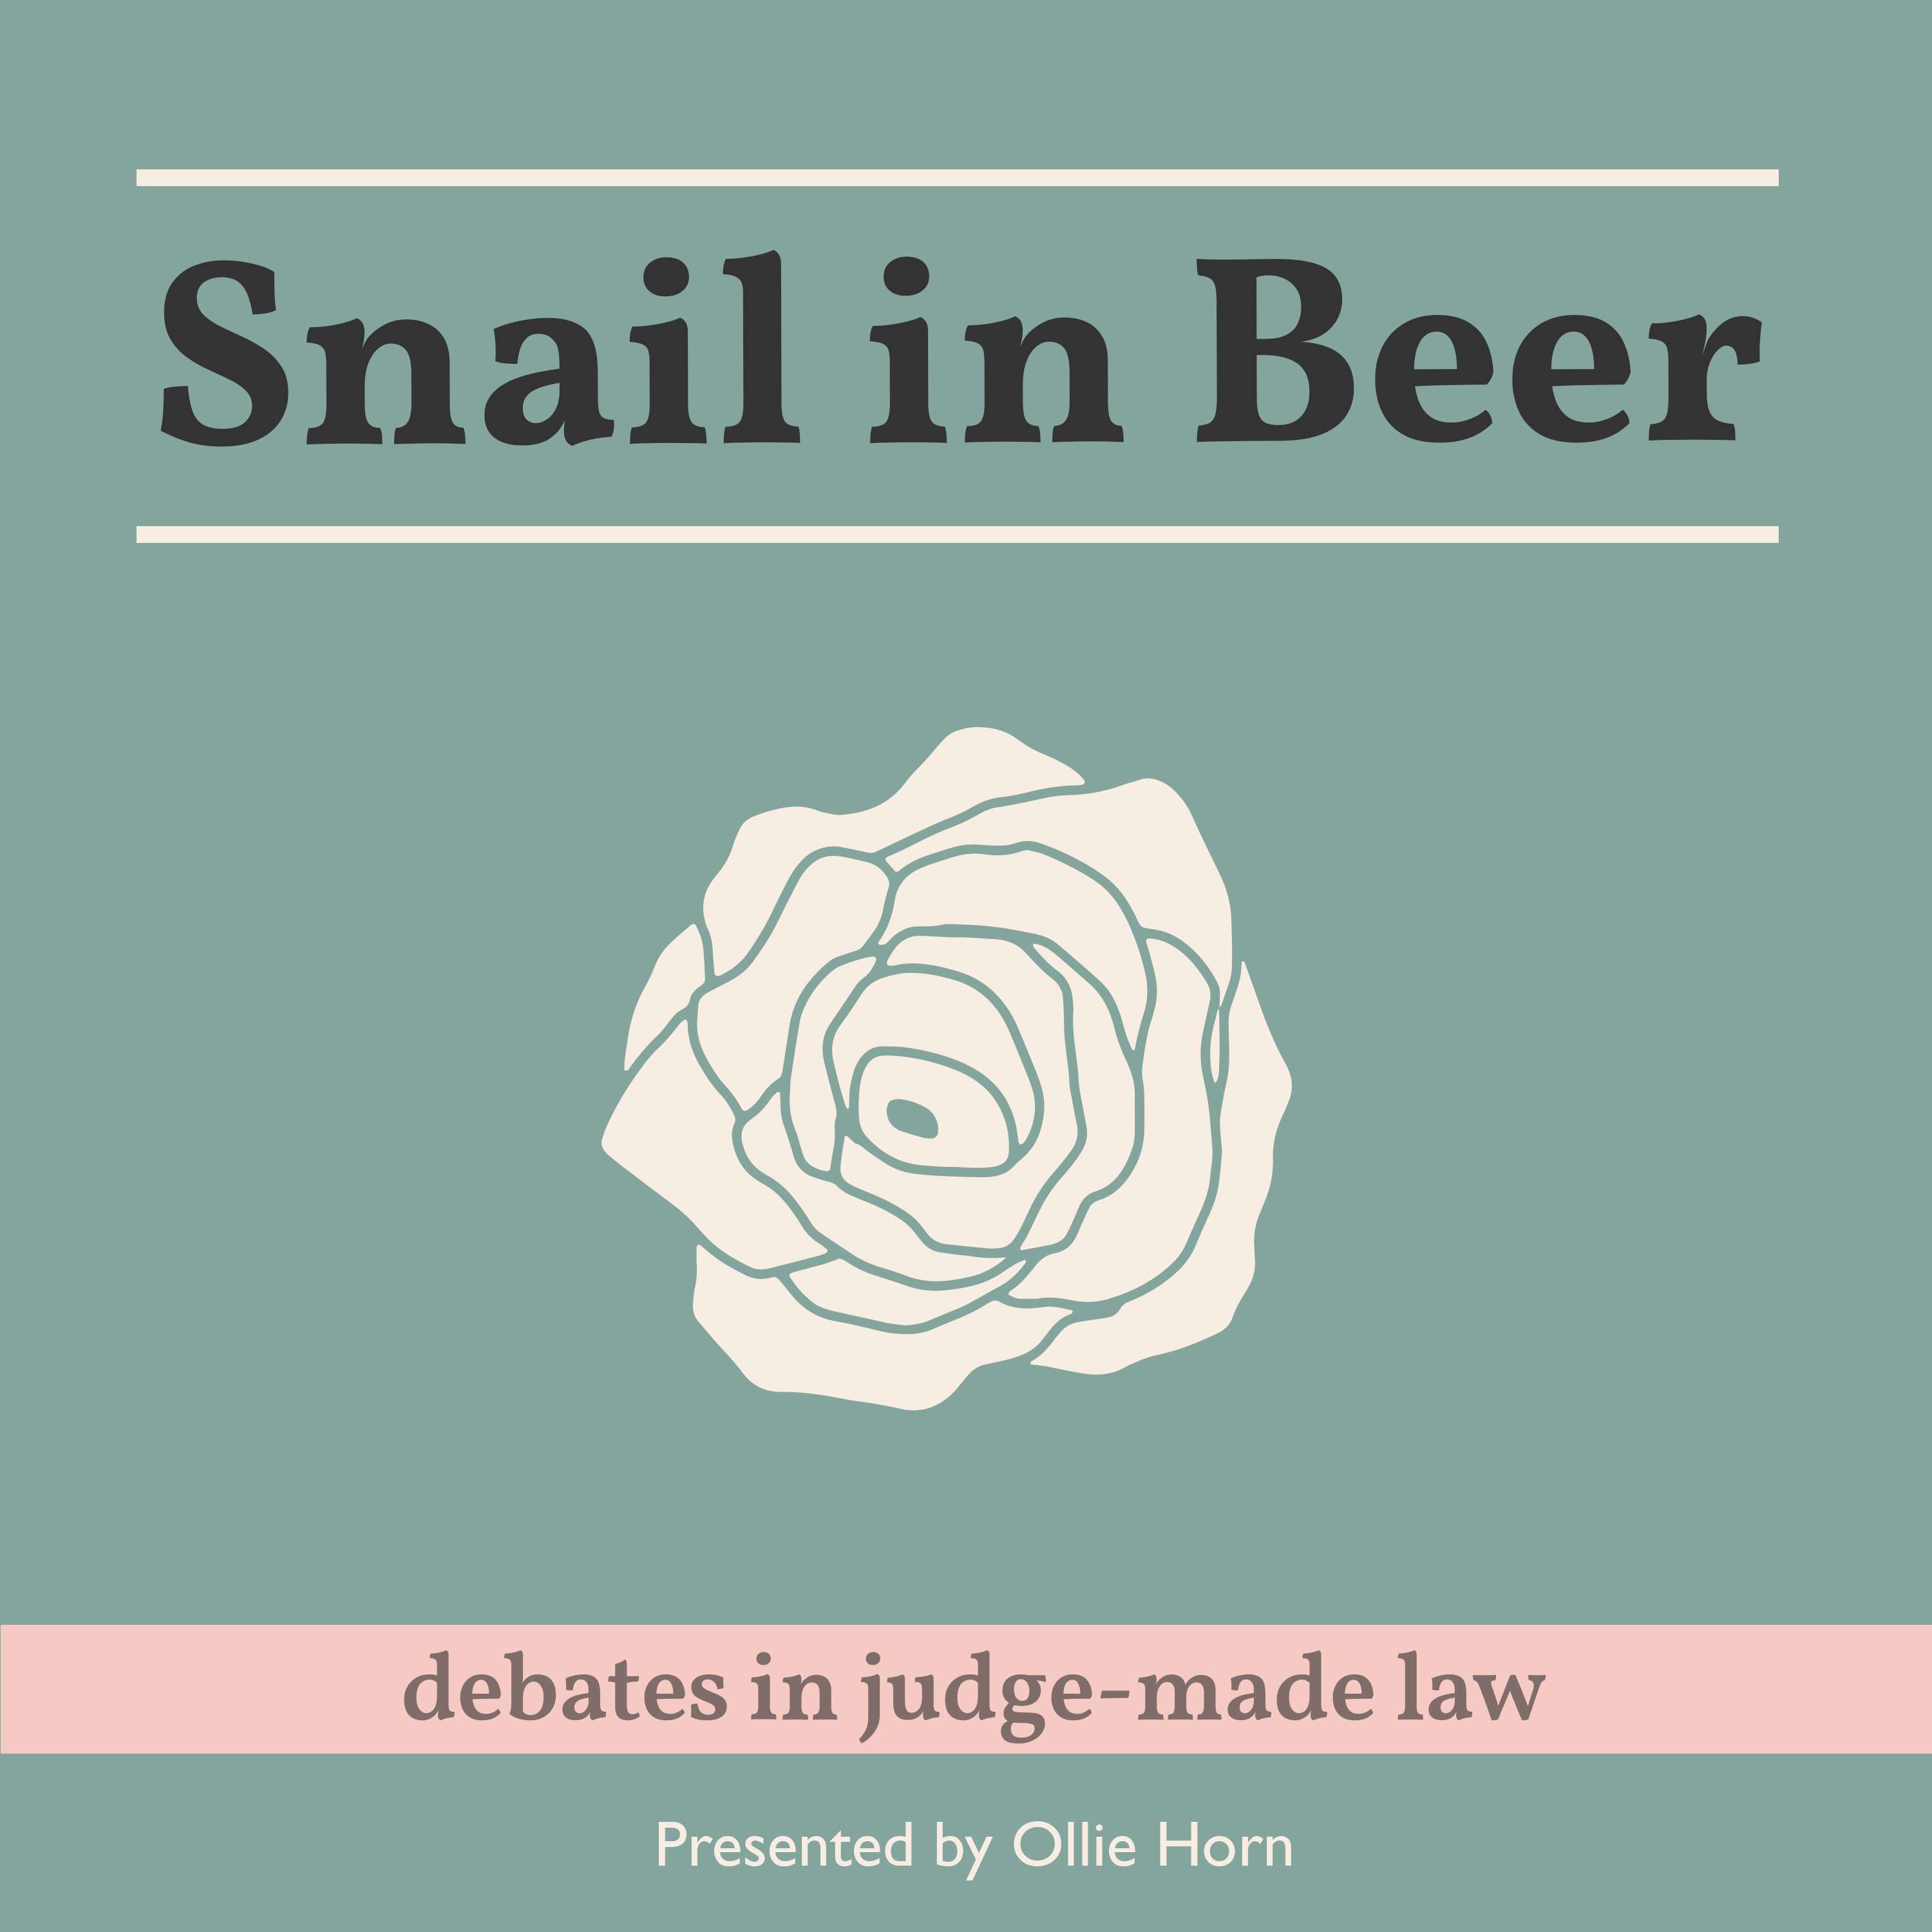 Snail in Beer: Debates in judge-made law